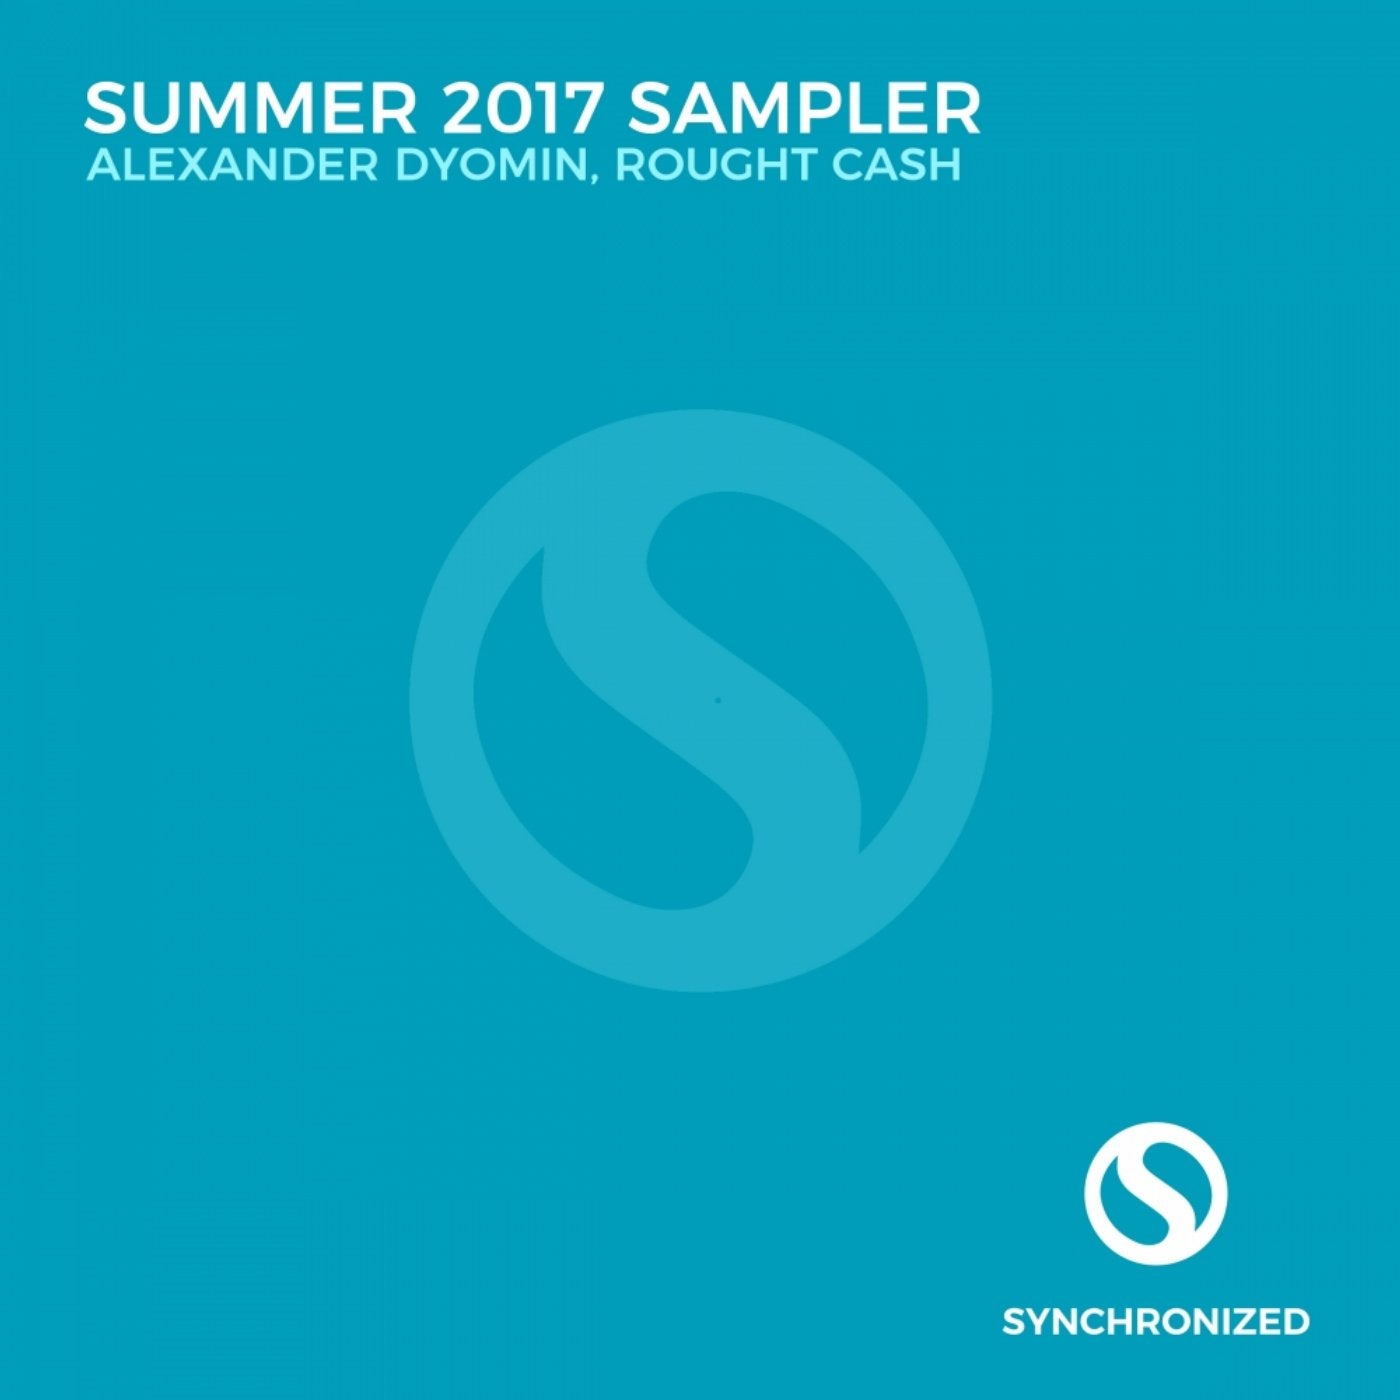 Summer 2017 Sampler